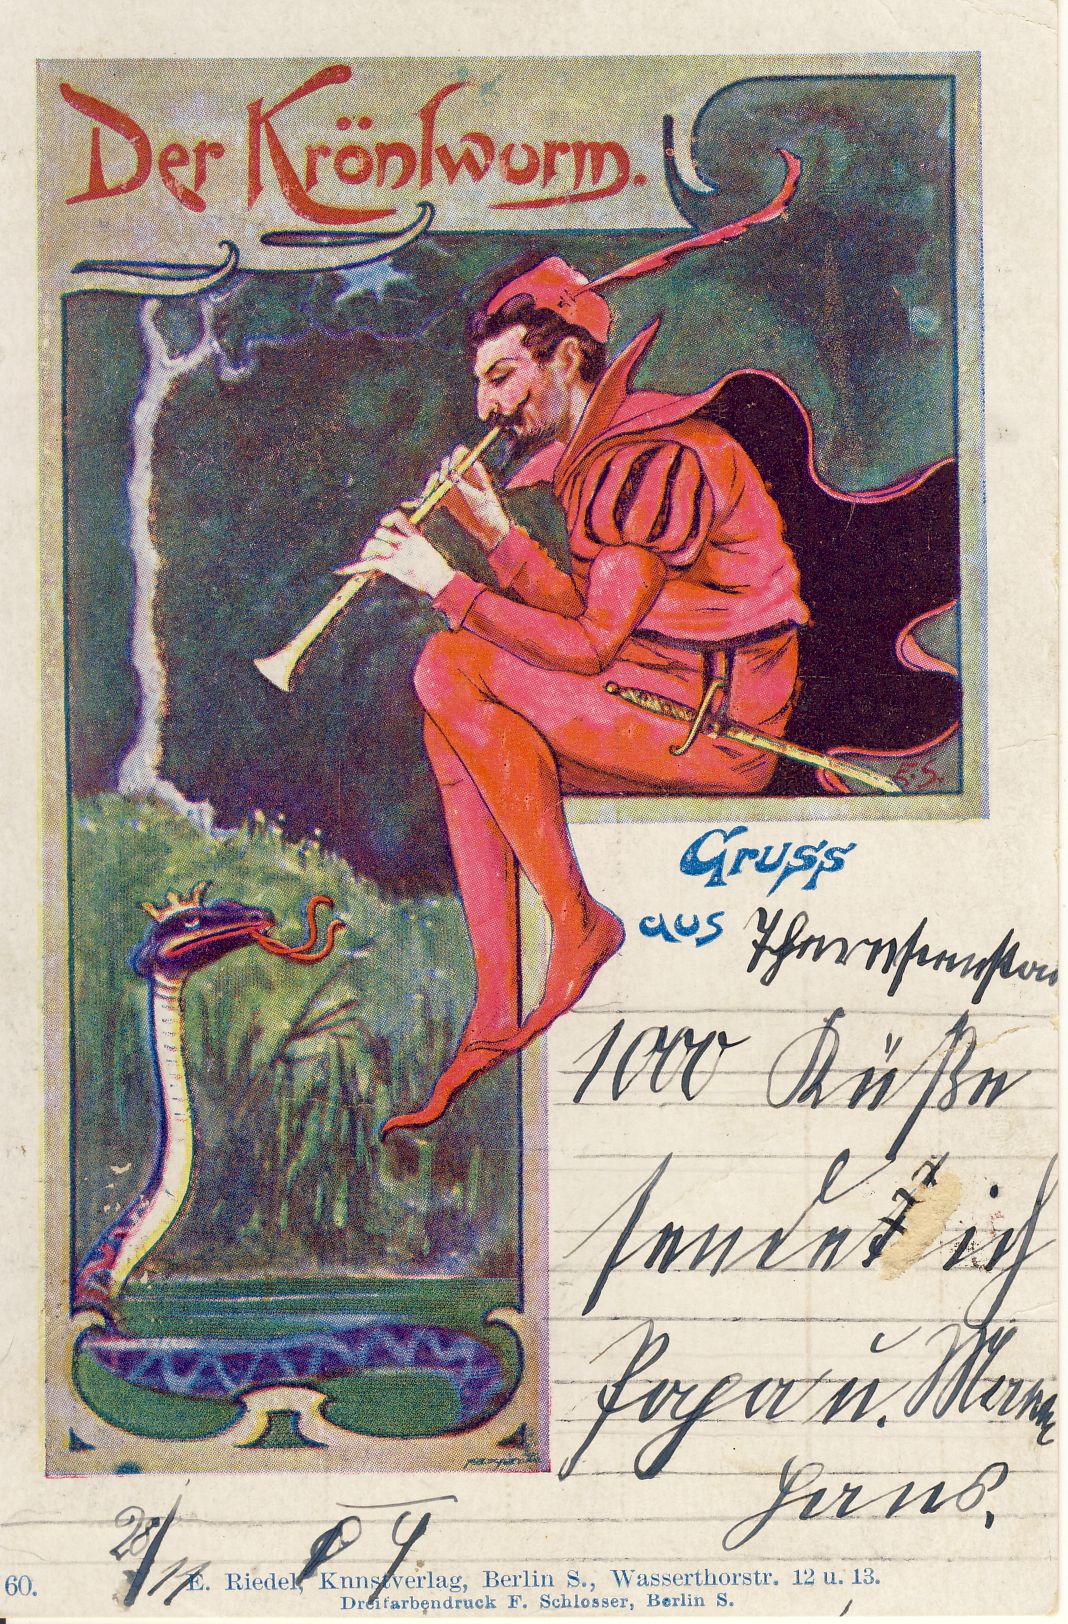 Der Krönlwurm Postkarte (Deutsches Märchen- und Wesersagenmuseum CC BY-NC-SA)